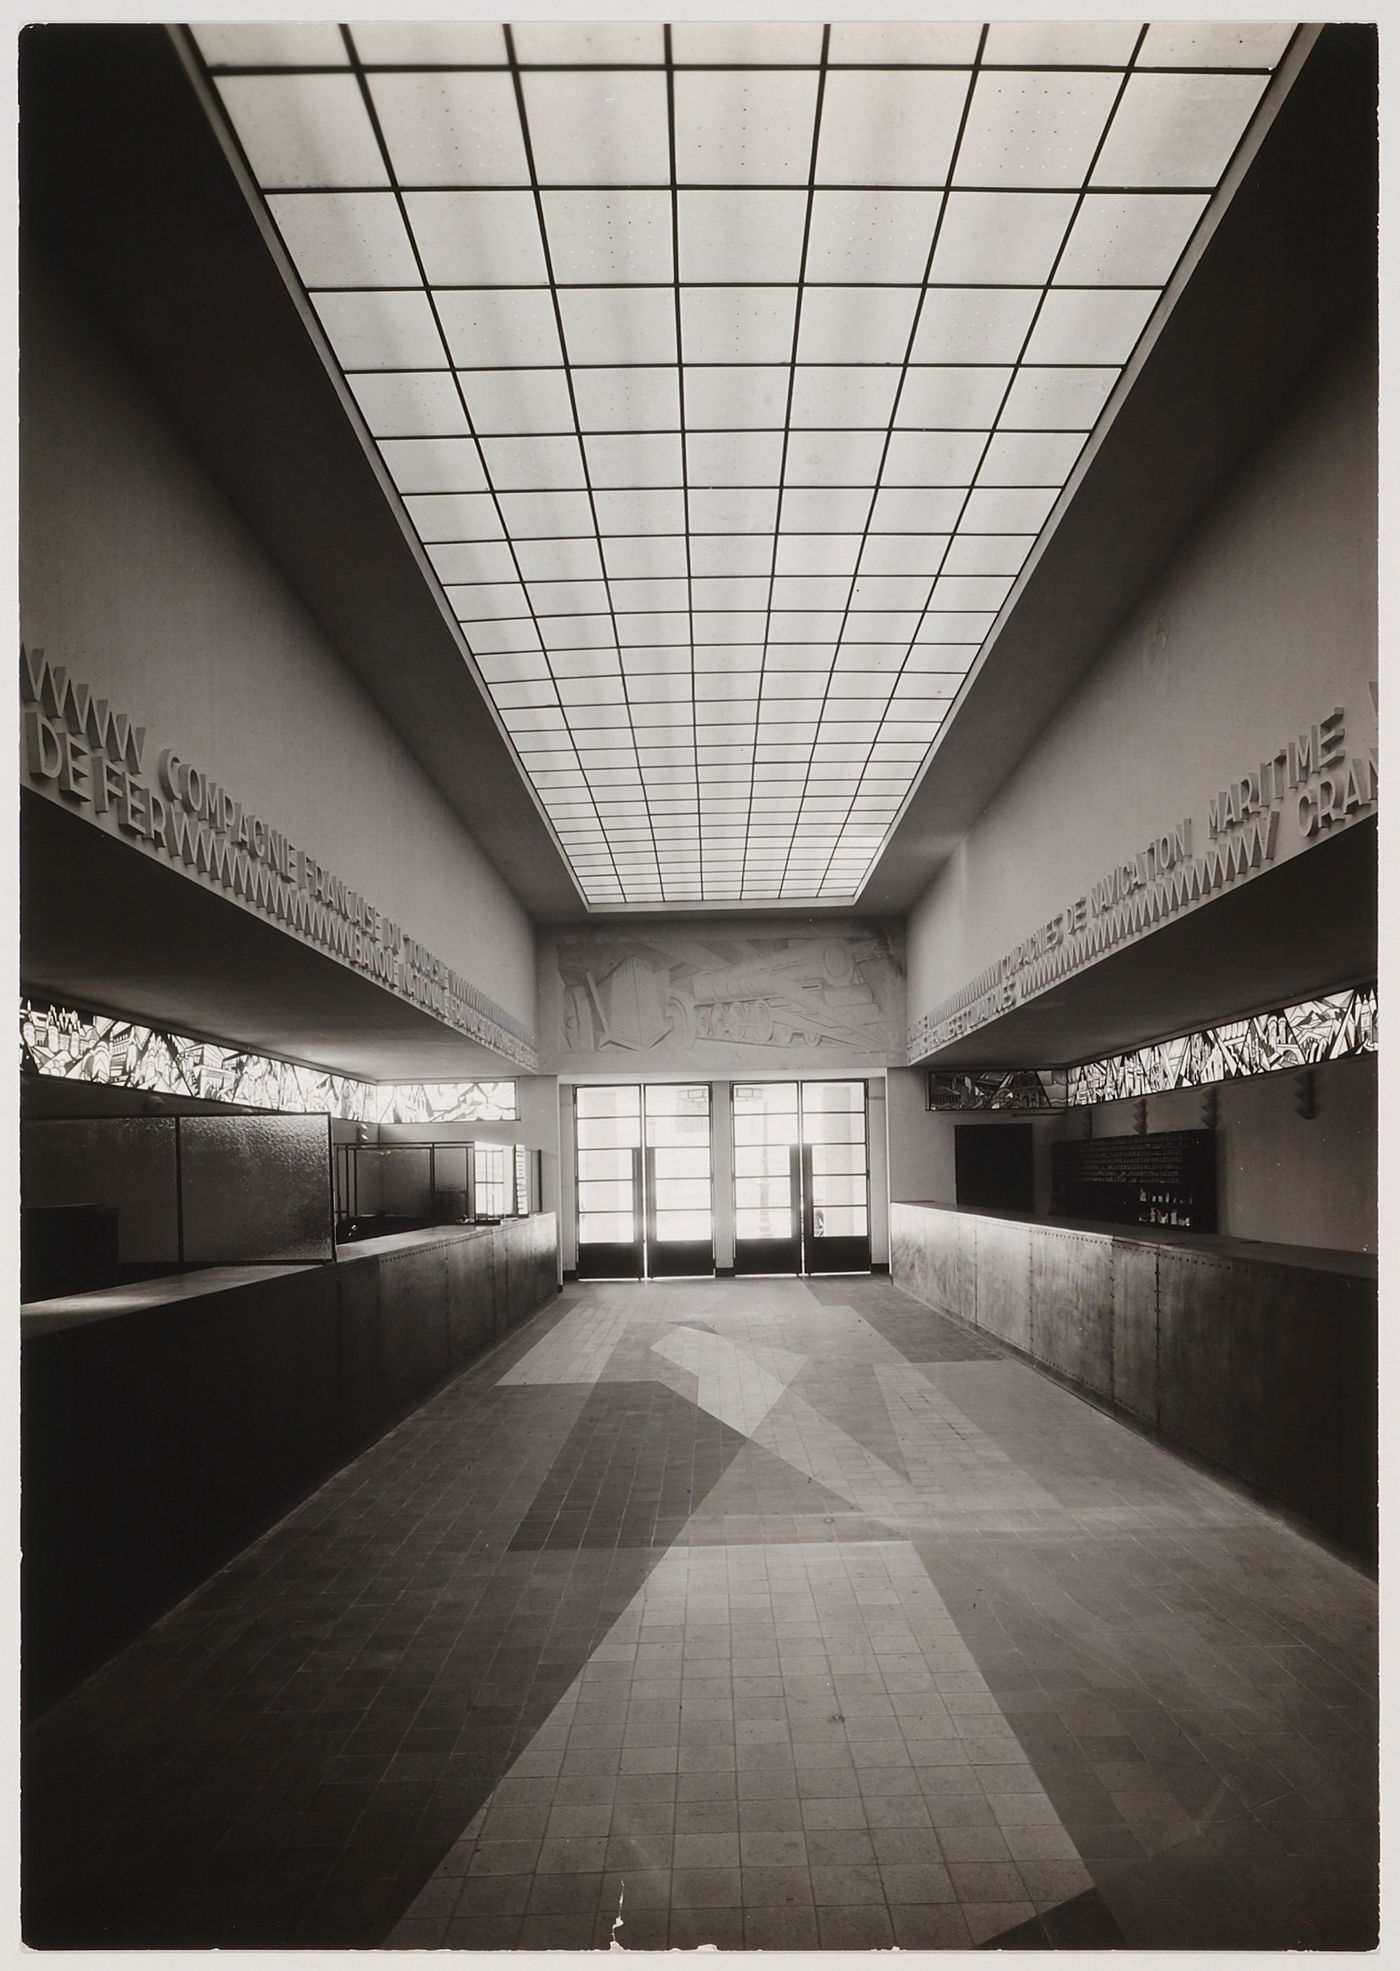 Exposition internationale des arts décoratifs et industriels modernes (1925: Paris, France): Interior view looking towards main entrance of Pavilion of Tourism